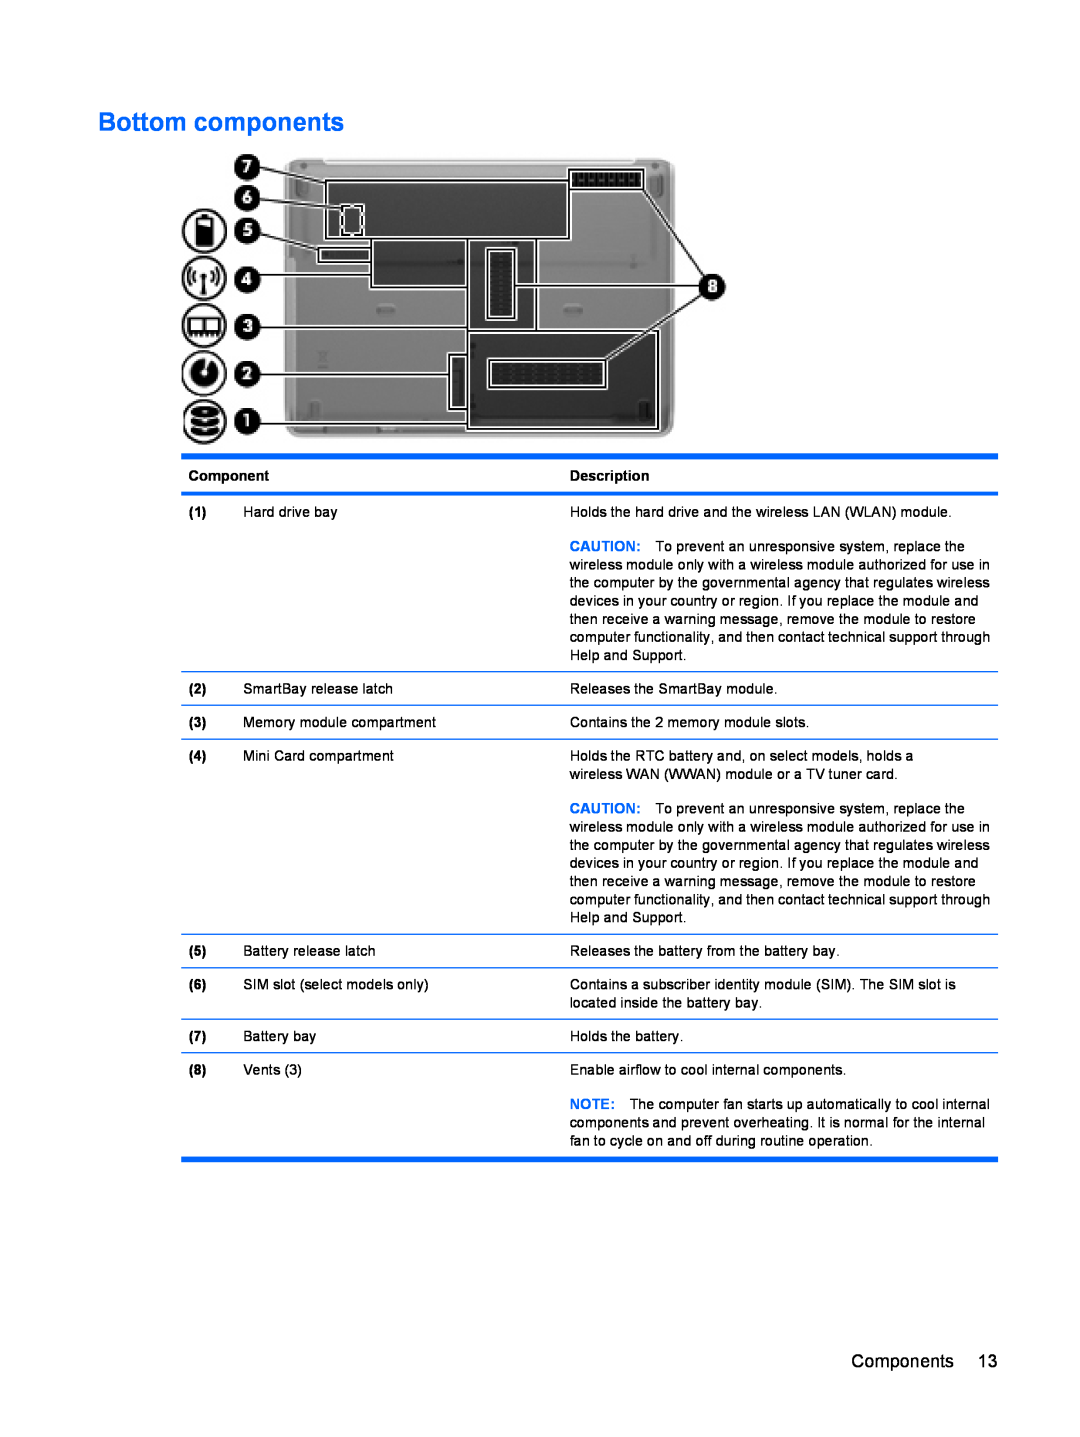 HP dv4-2160us manual Bottom components, Components, Description 